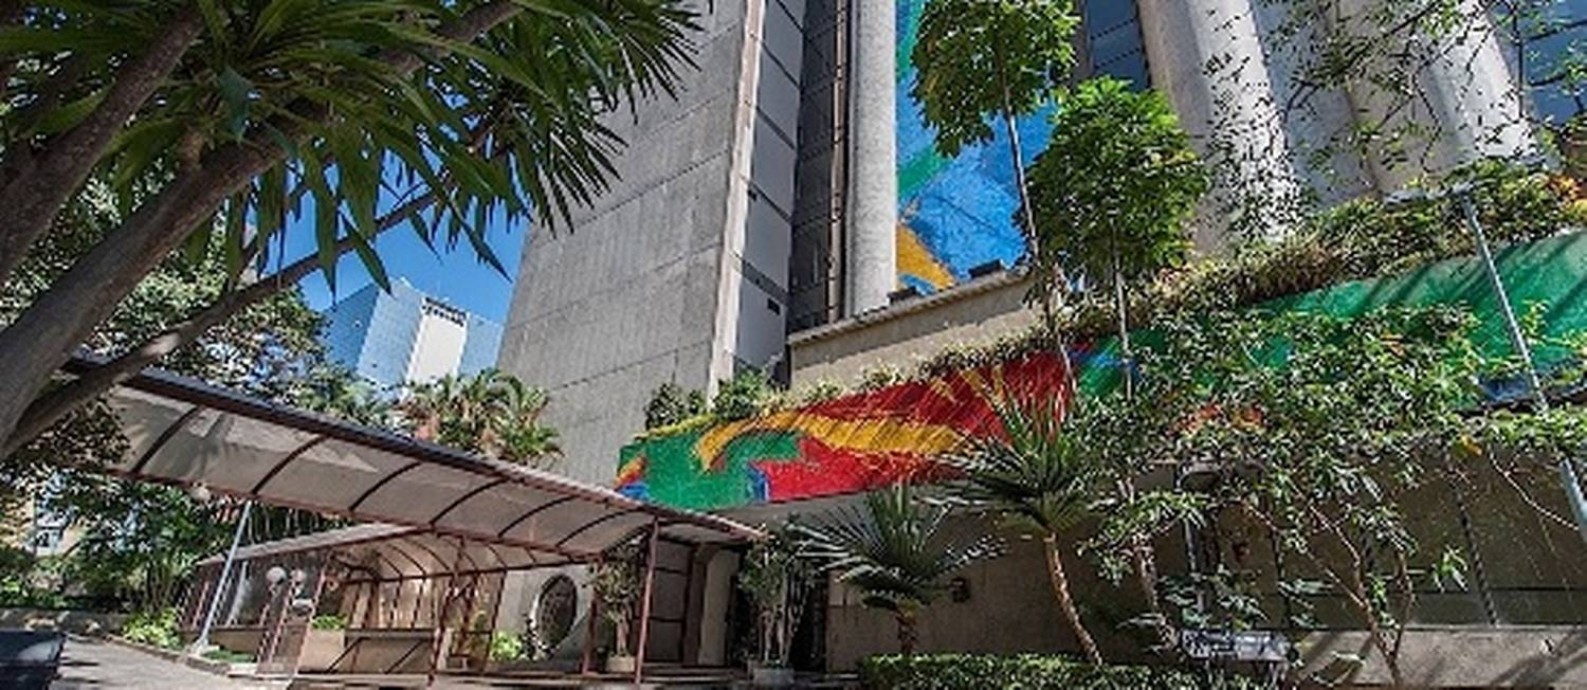 Hotel Maksoud Plaza, que fechou após 42 anos de operação nesta terça-feira Foto: Divulgação